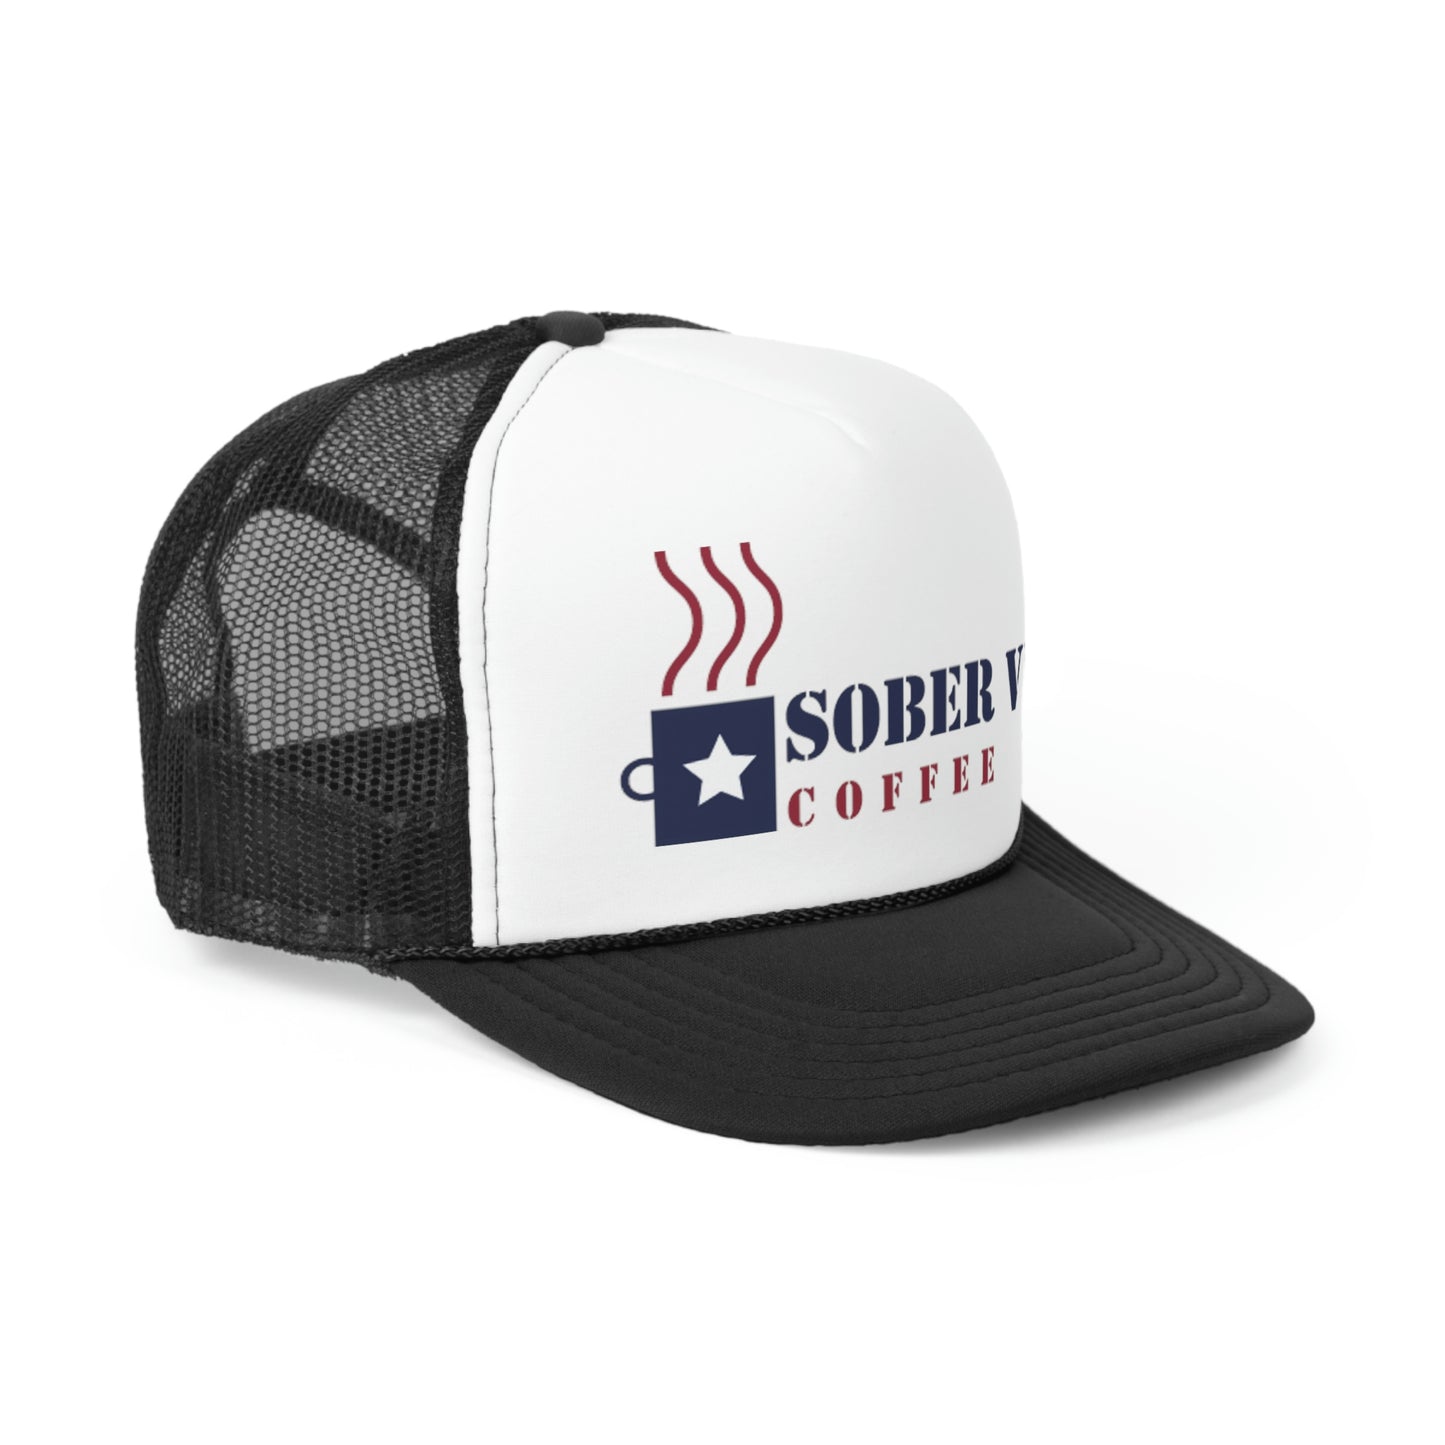 Sober Vet Coffee Trucker Hat